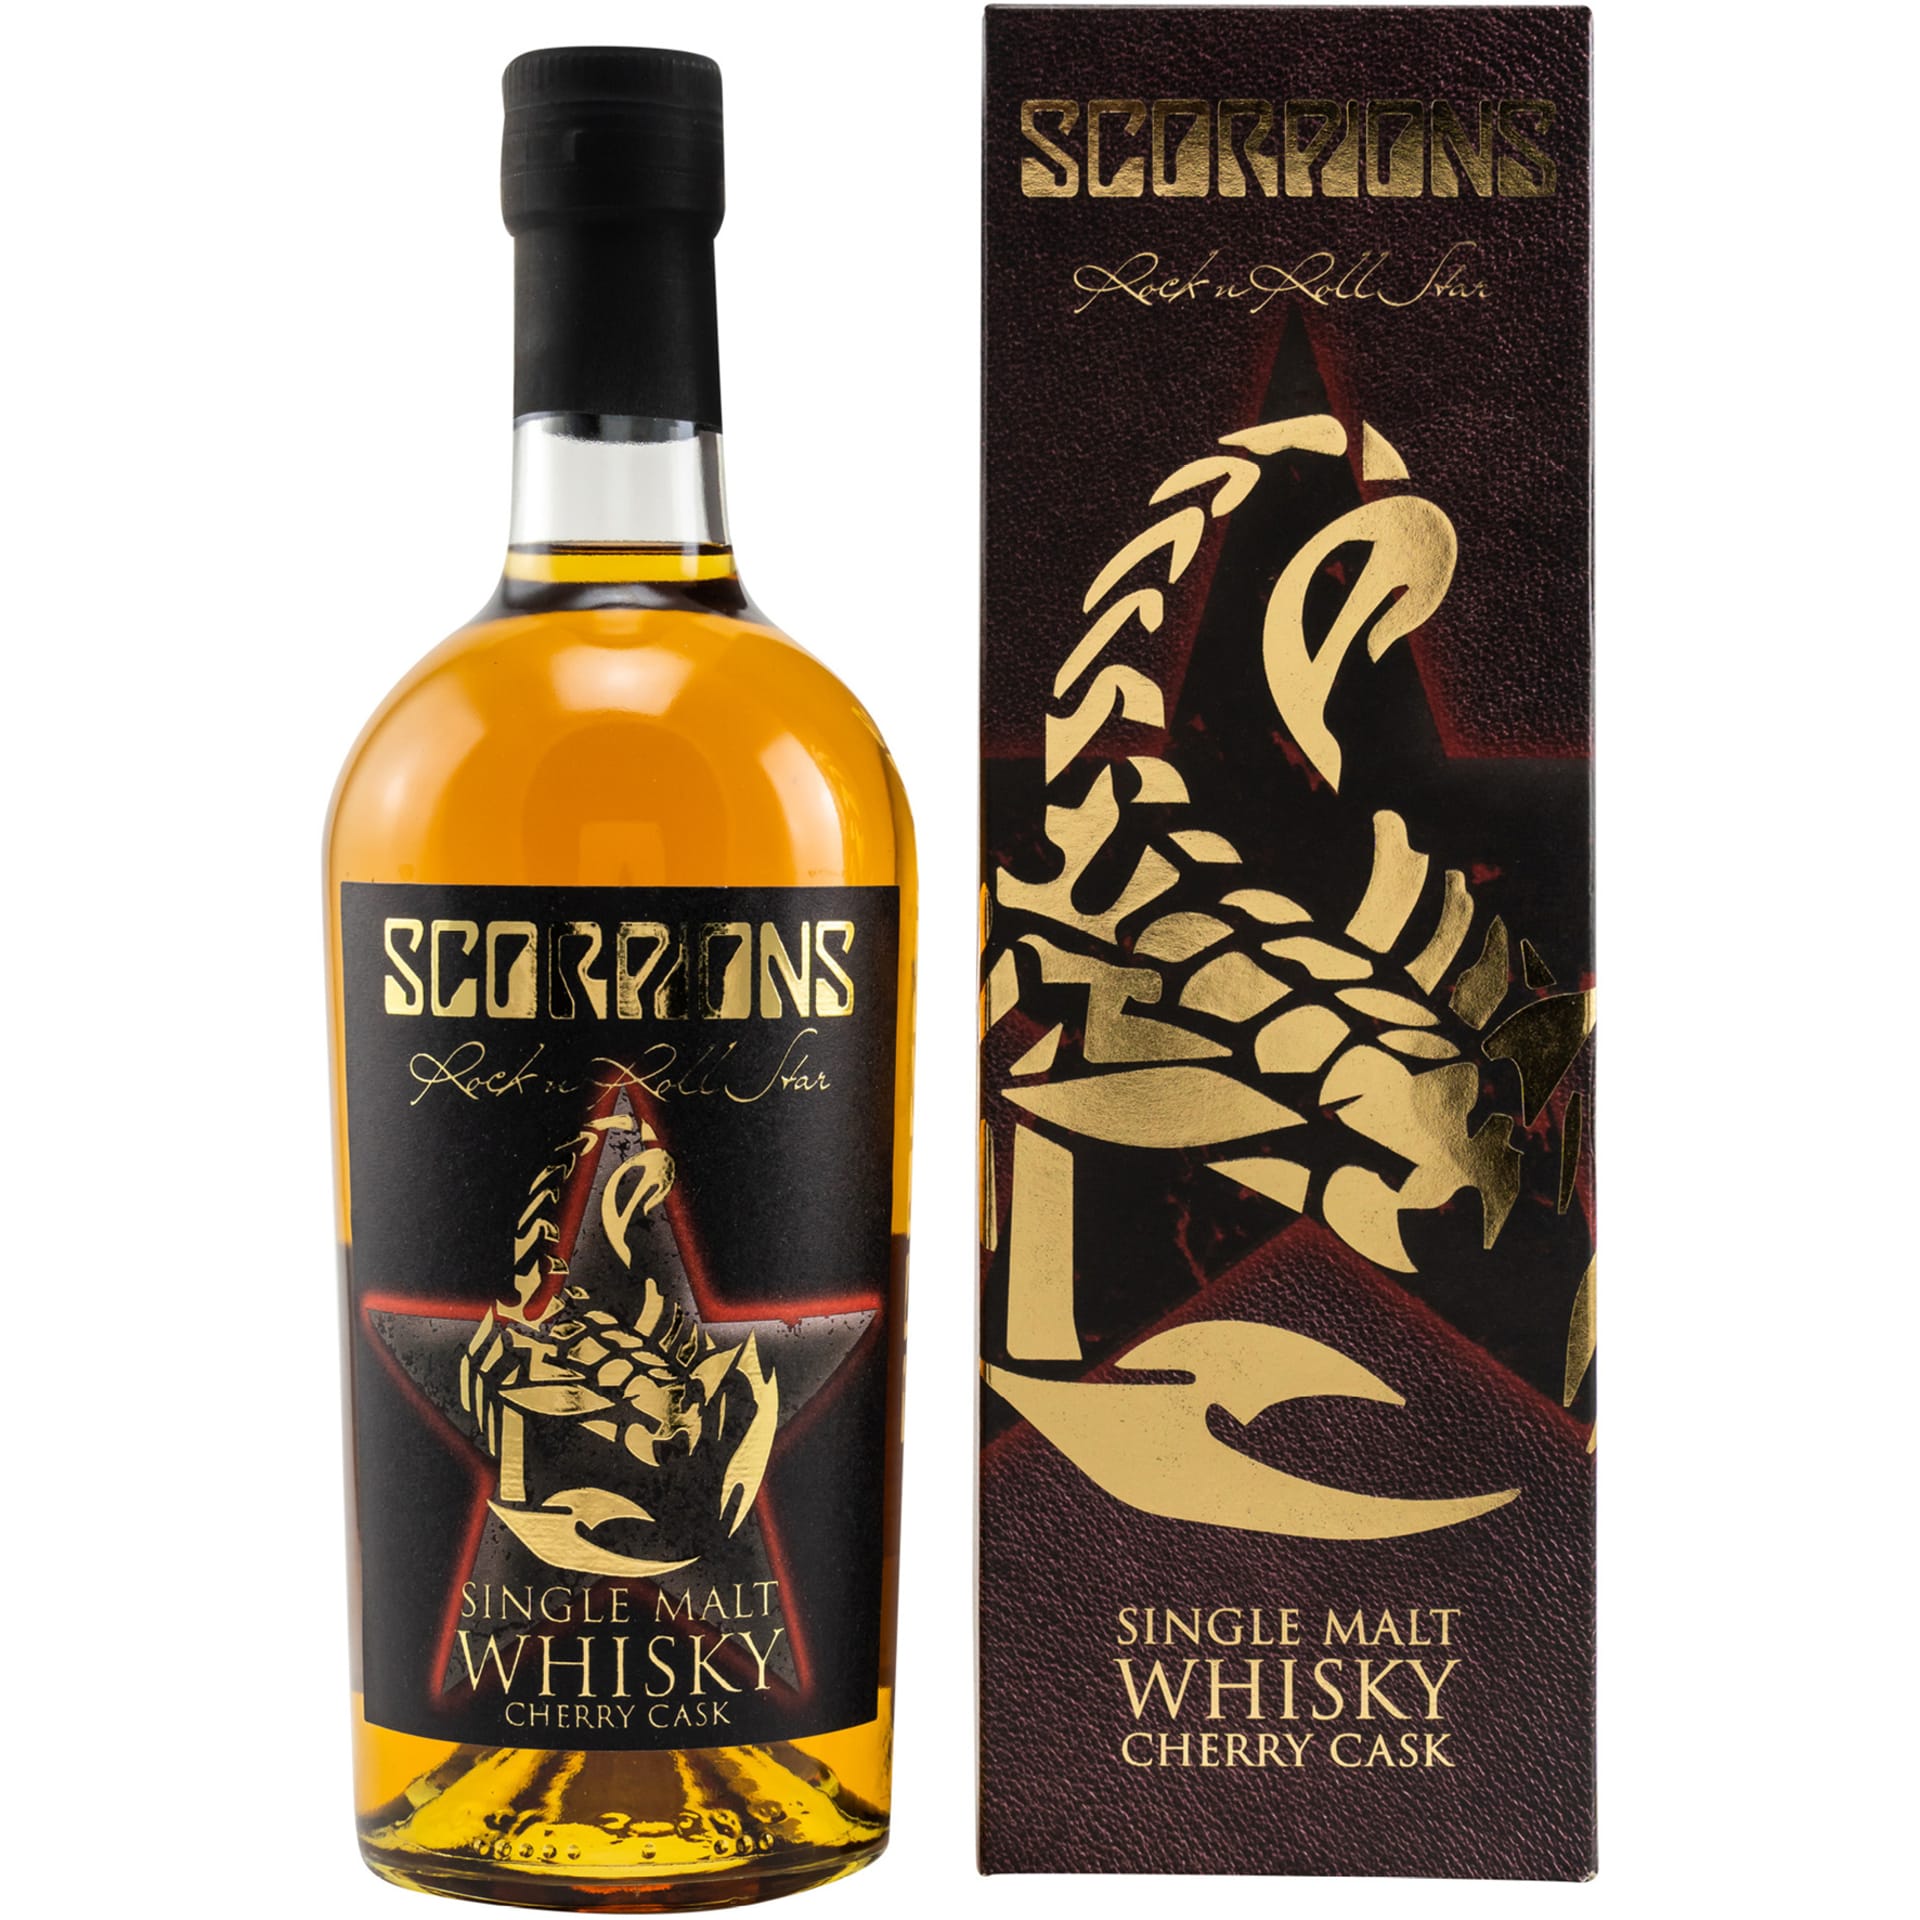 Scorpions Rock’n’Roll Star Single Malt Whisky